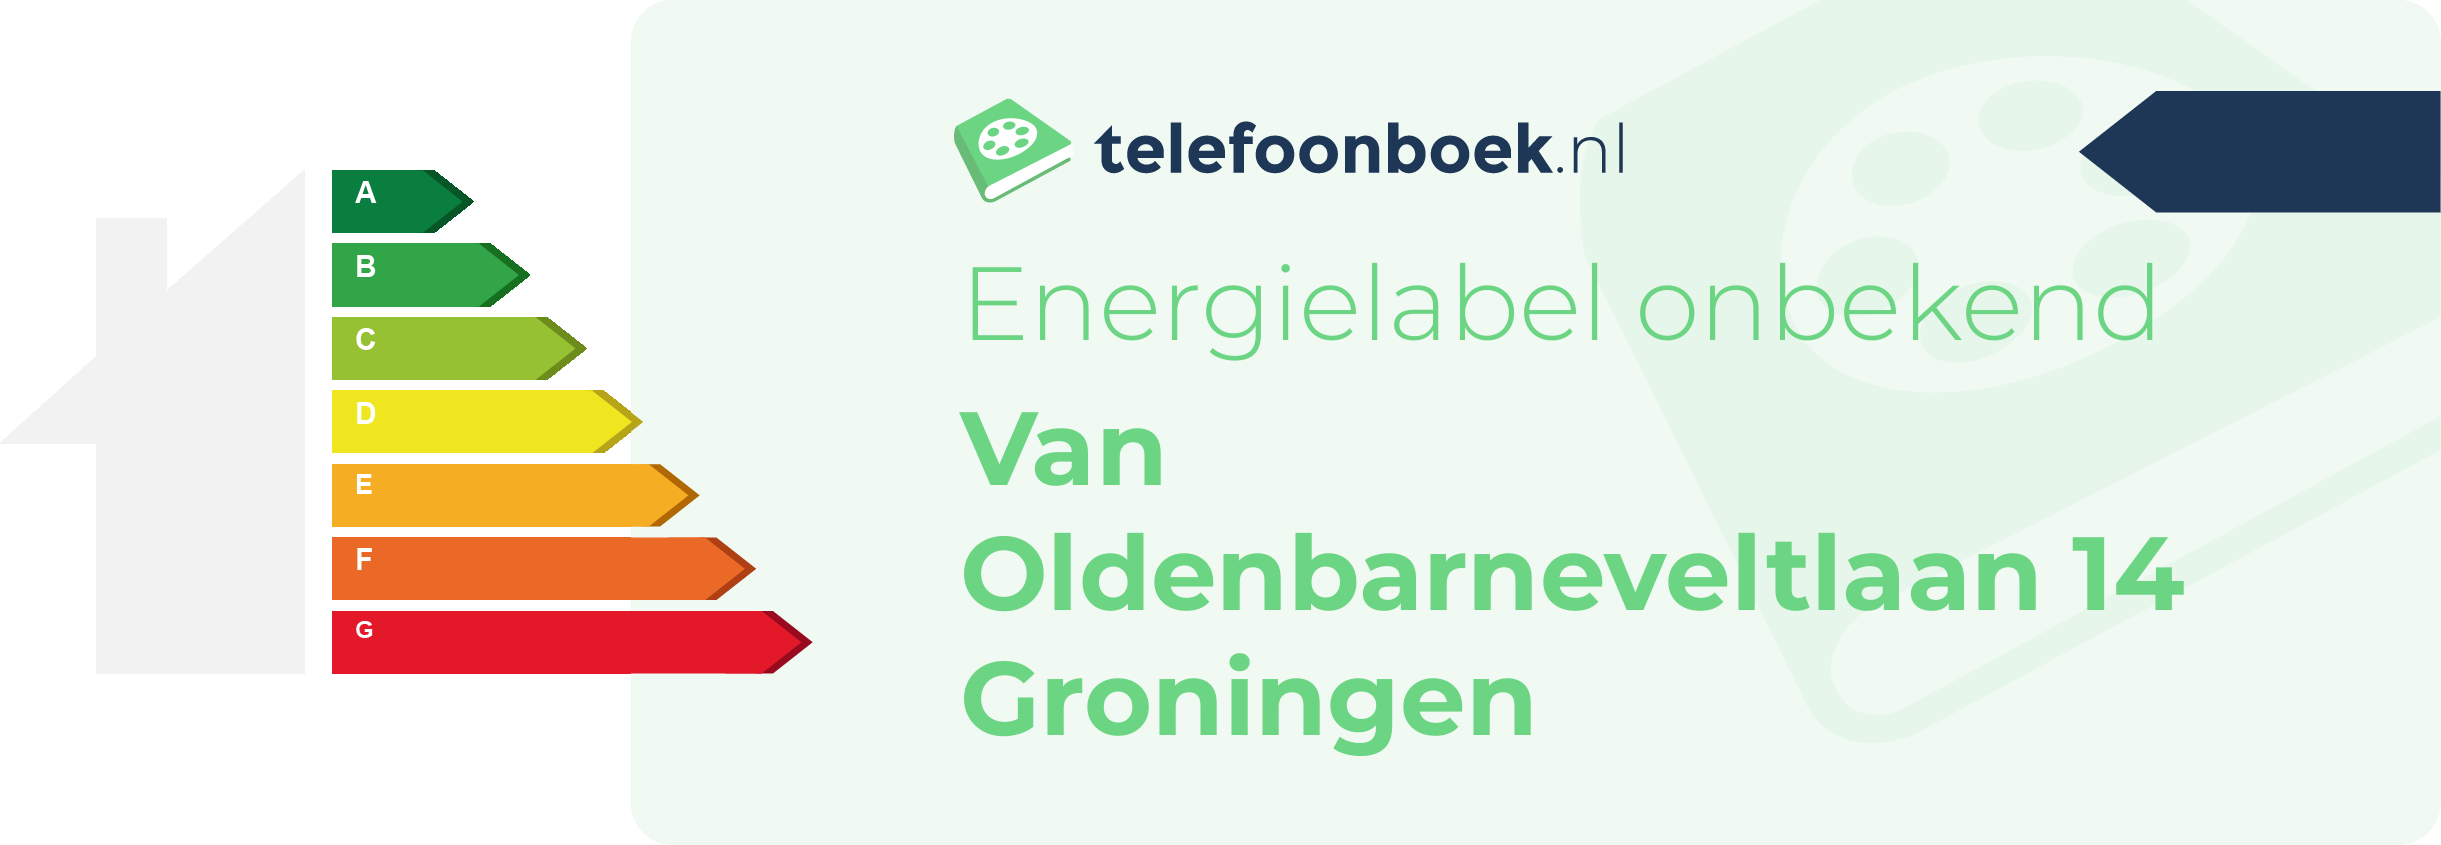 Energielabel Van Oldenbarneveltlaan 14 Groningen